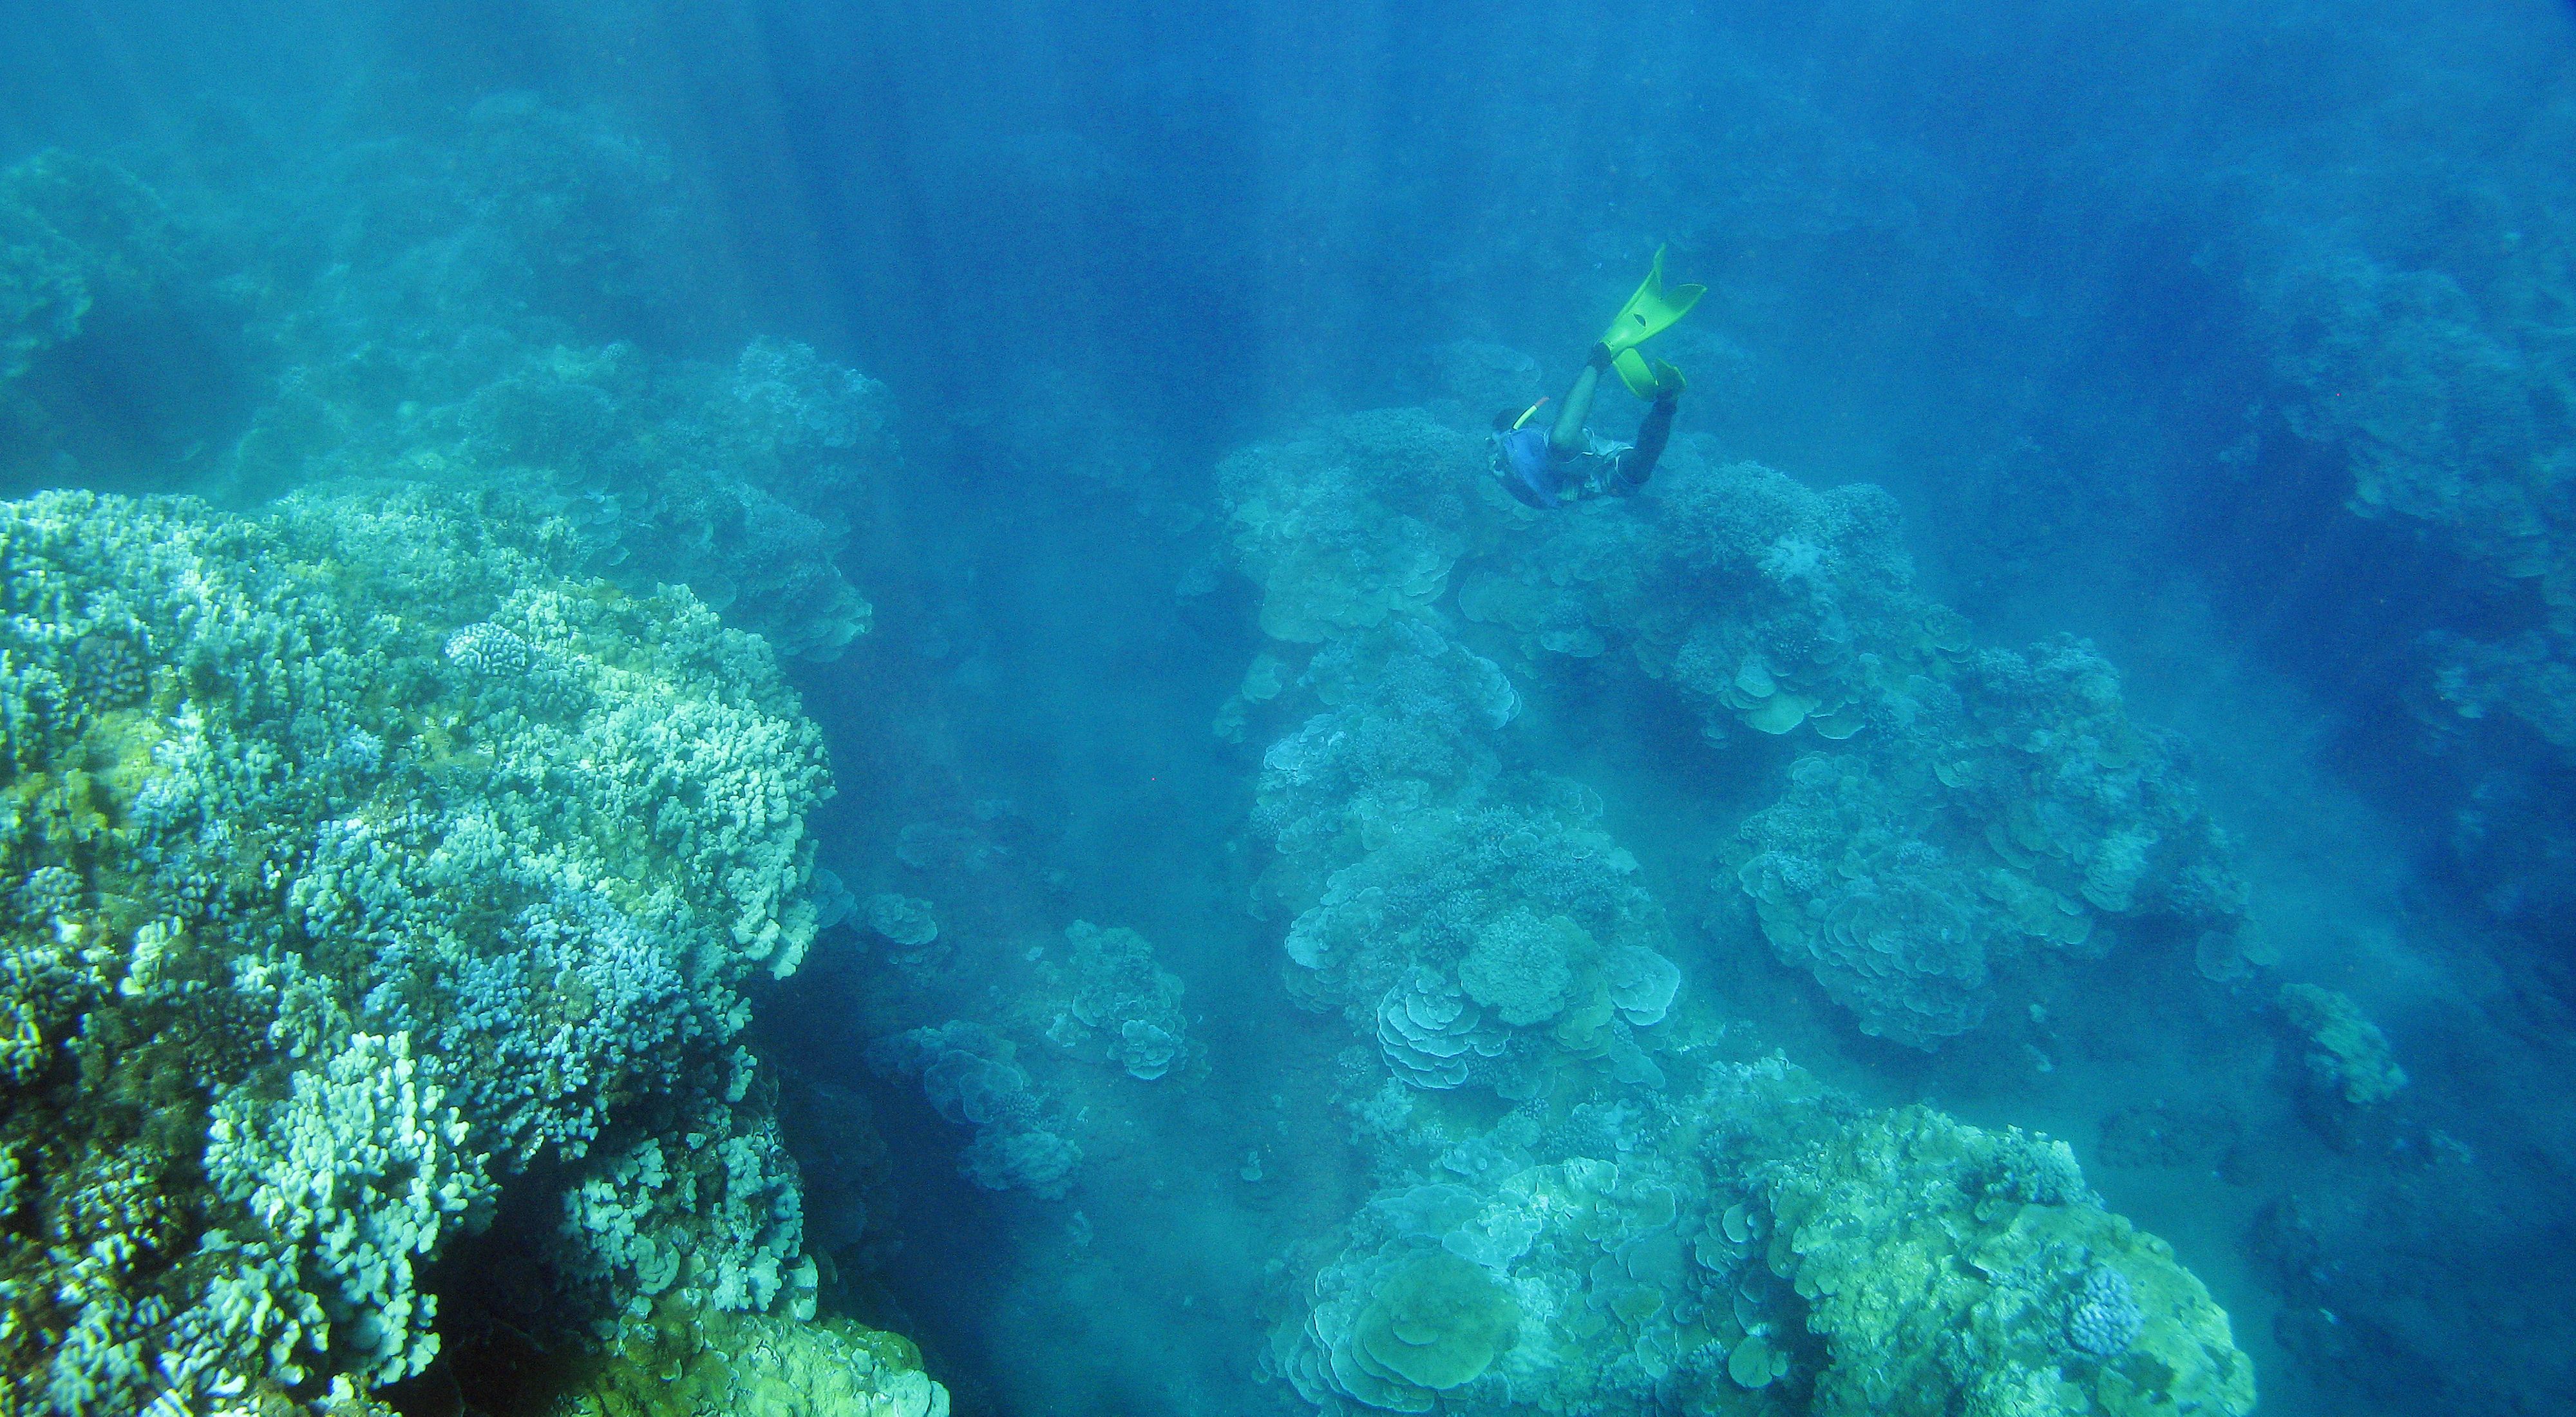 Vista submarina mirando hacia abajo a un buzo nadando entre enormes arrecifes de coral.